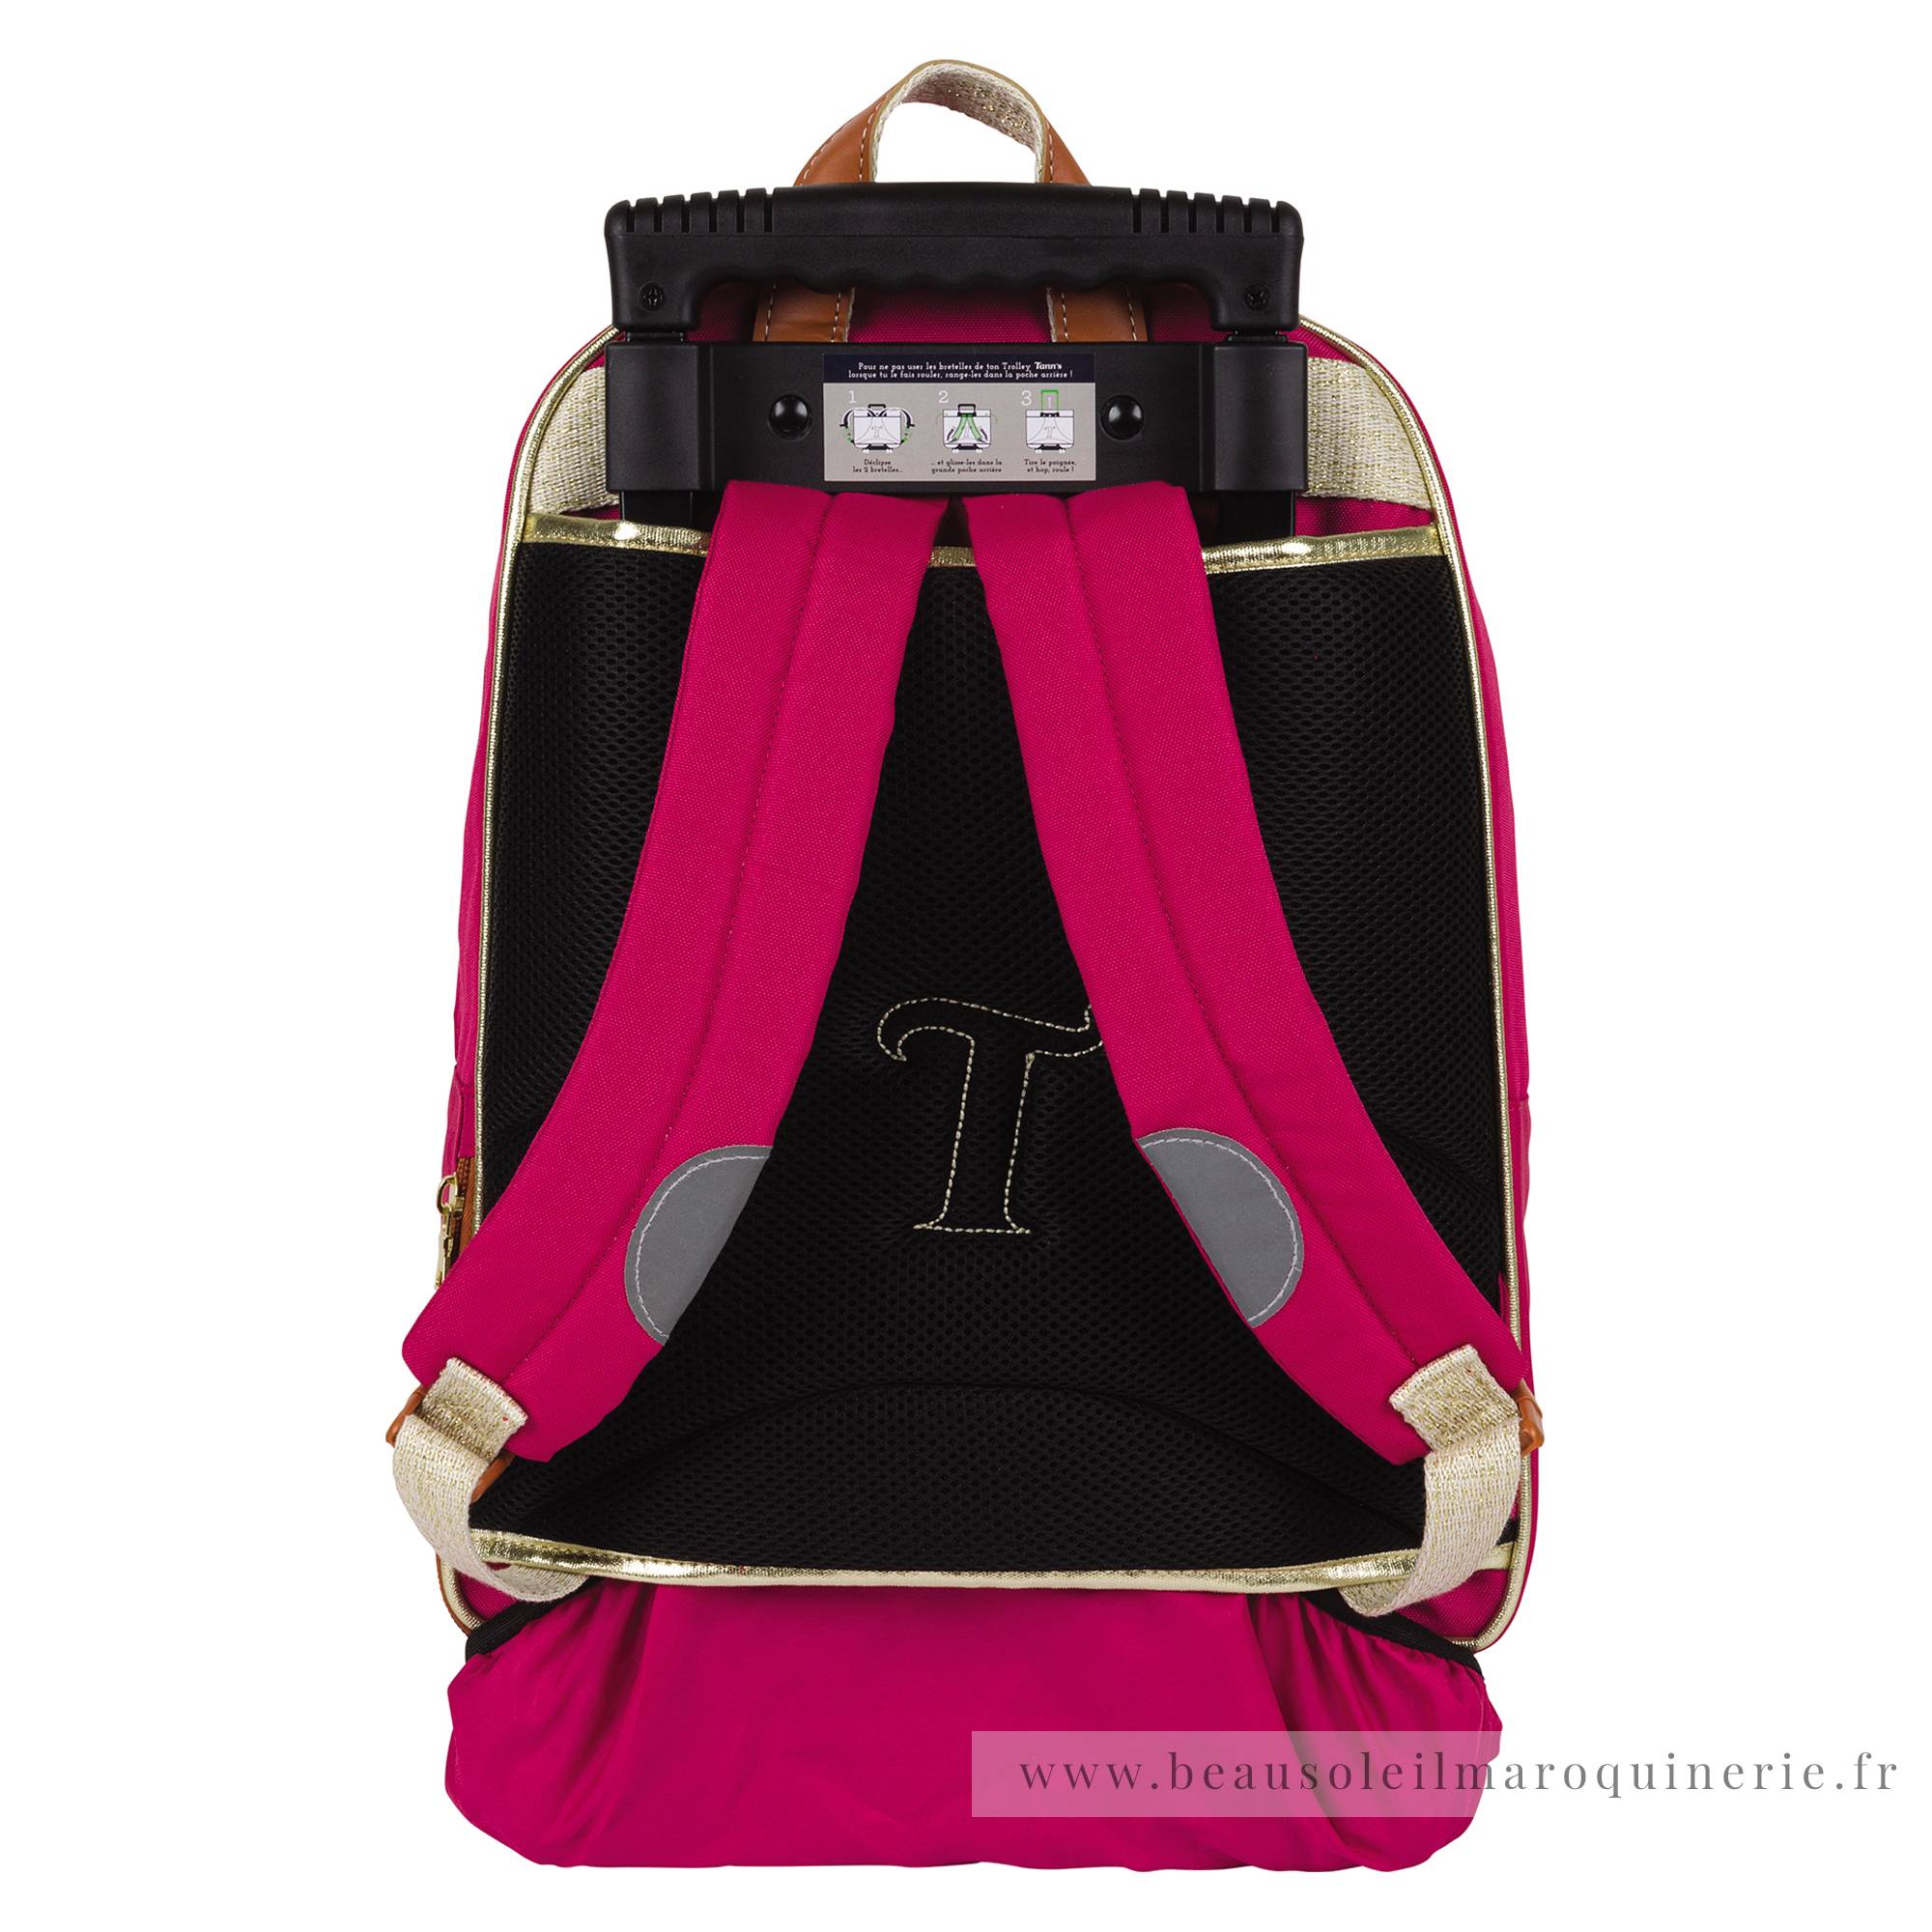 Trolley sac à dos L Tann's Paloma 73113 couleur Rose, vue de dos avec bretelles et cache roues